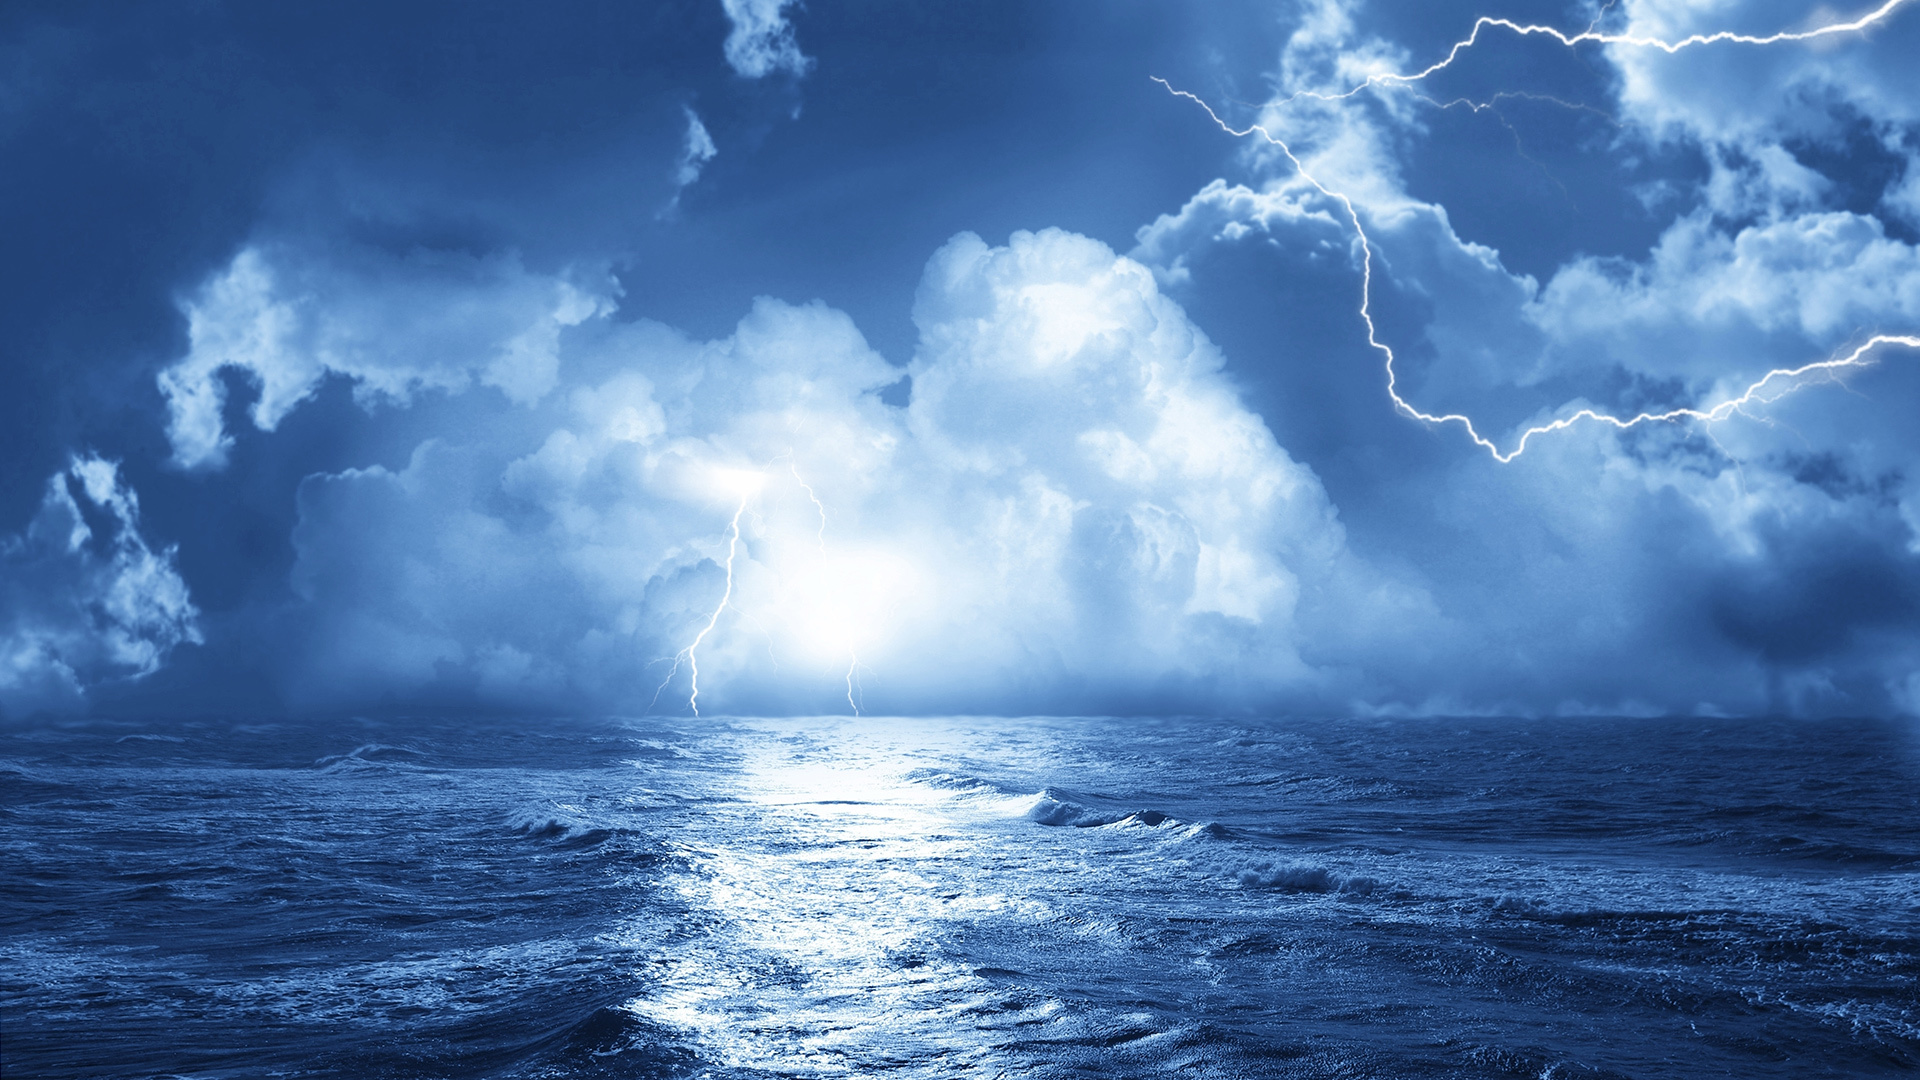 Free download wallpaper Sea, Clouds, Landscape, Waves, Lightning on your PC desktop